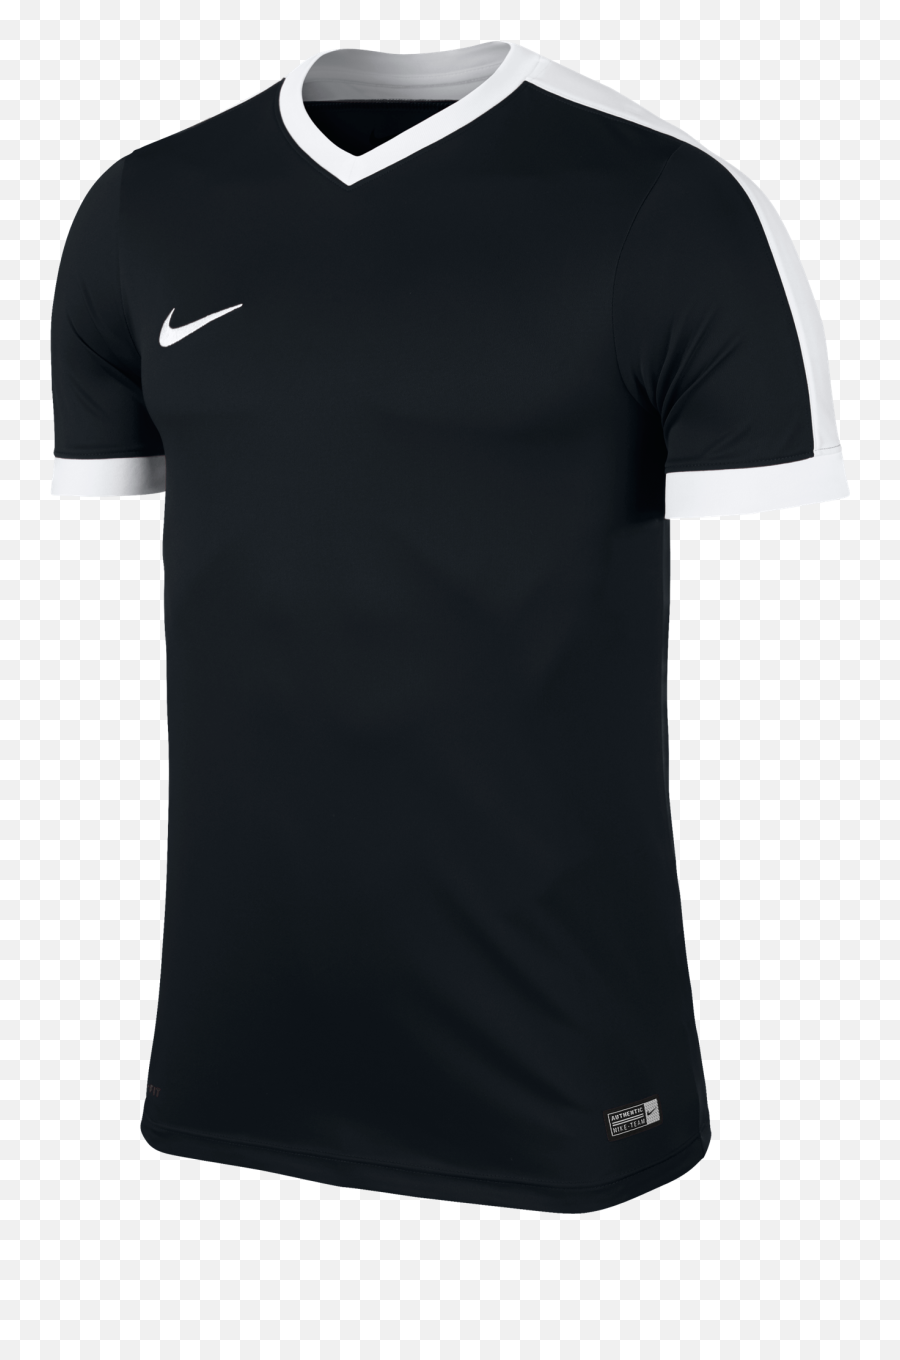 Nike Shirt Png U0026 Free Nike Shirtpng Transparent Images - Nike Shirt Png Emoji,Nike Png